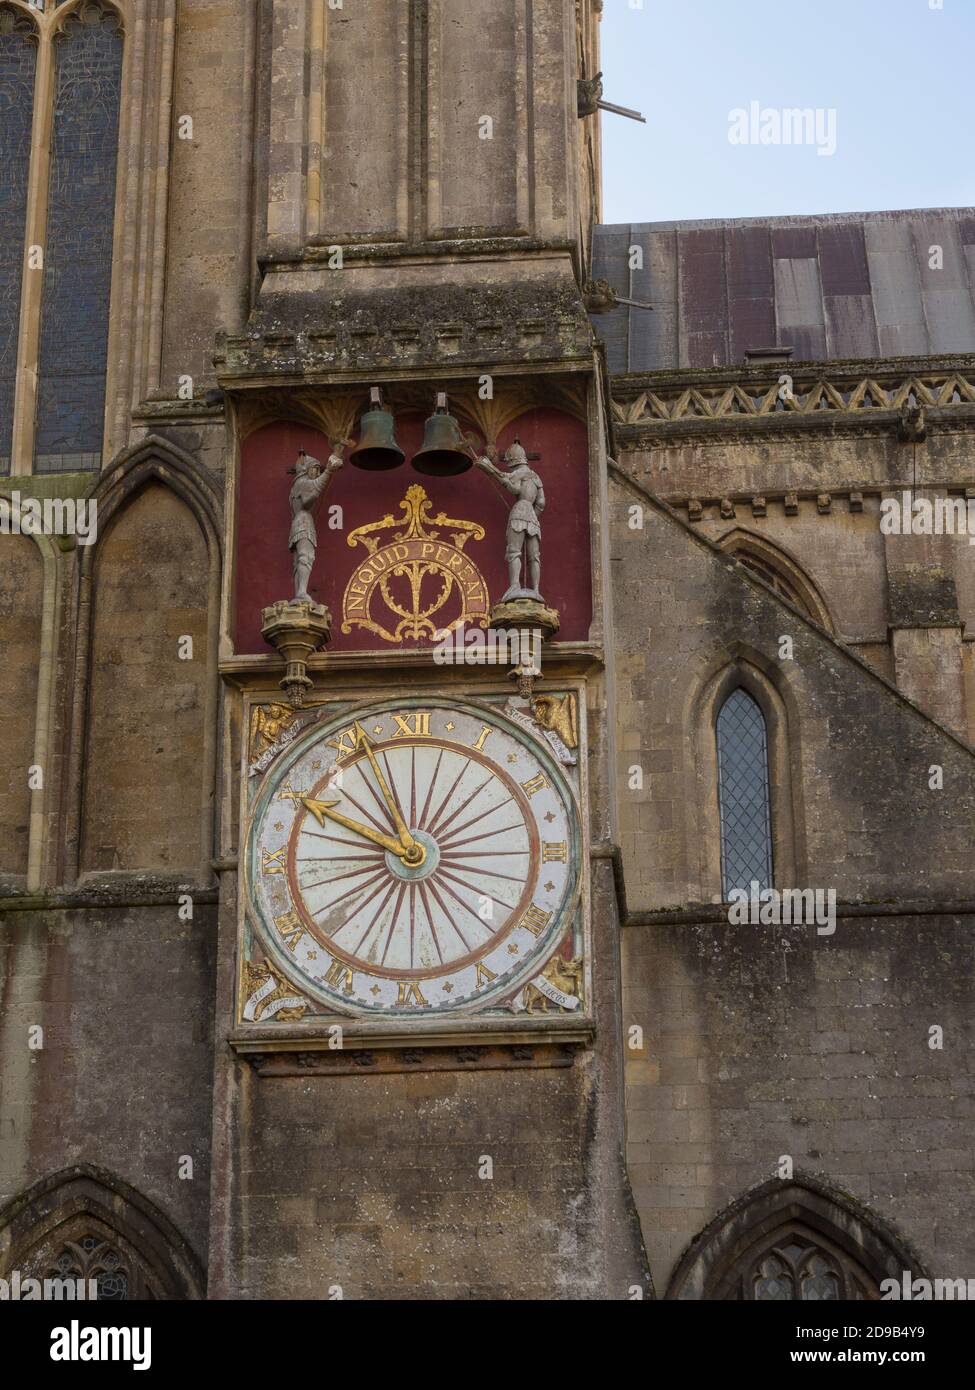 Die Außenseite der Wells Cathedral Uhr aus dem 14. Jahrhundert im Nordquerschiff der Wells Cathedral in der Stadt Wells, Somerset, England. Stockfoto